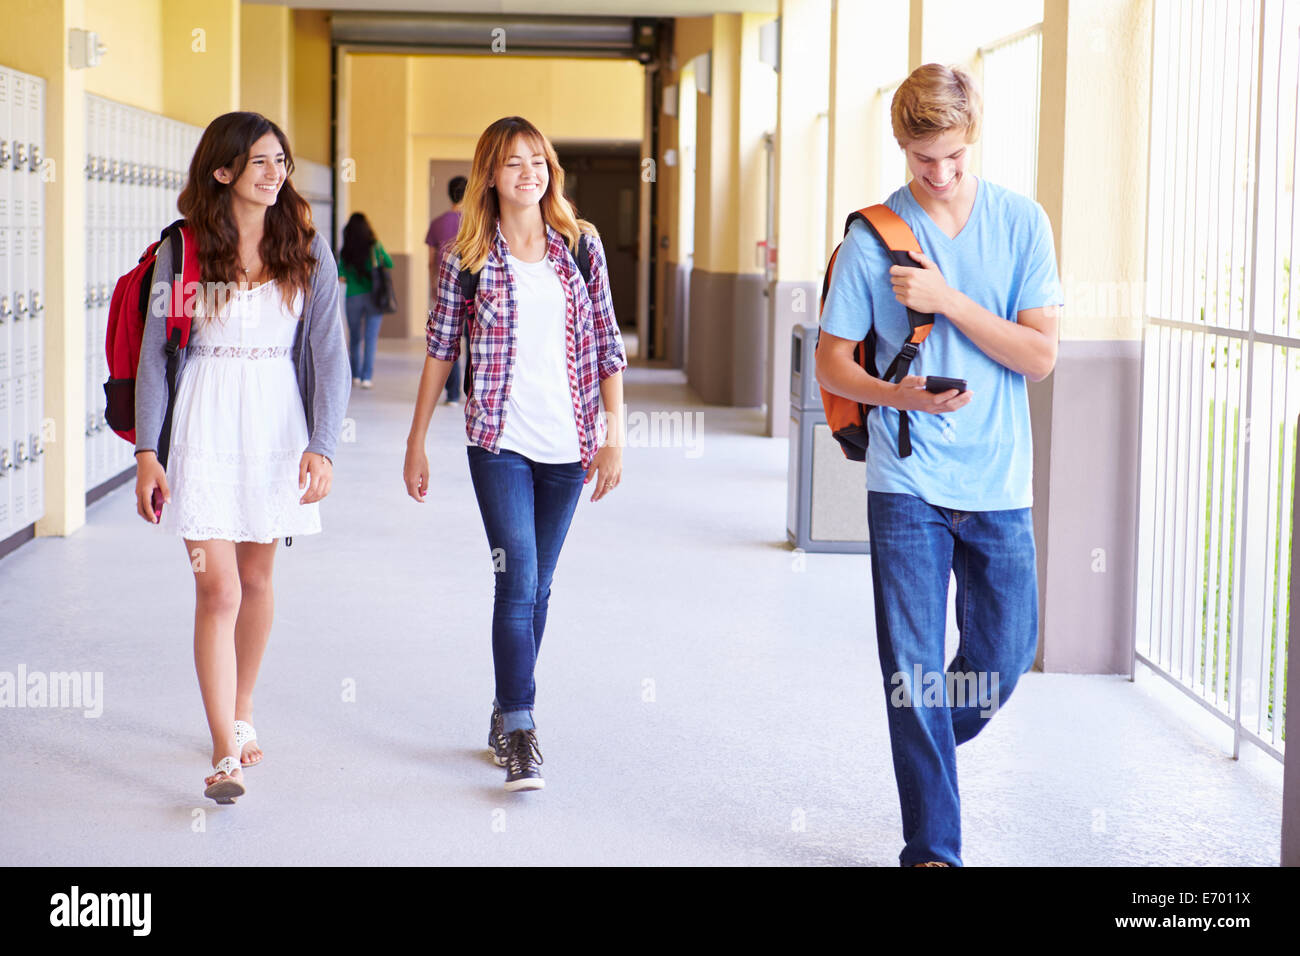 Los estudiantes de secundaria caminando en el pasillo a través de teléfono móvil Foto de stock